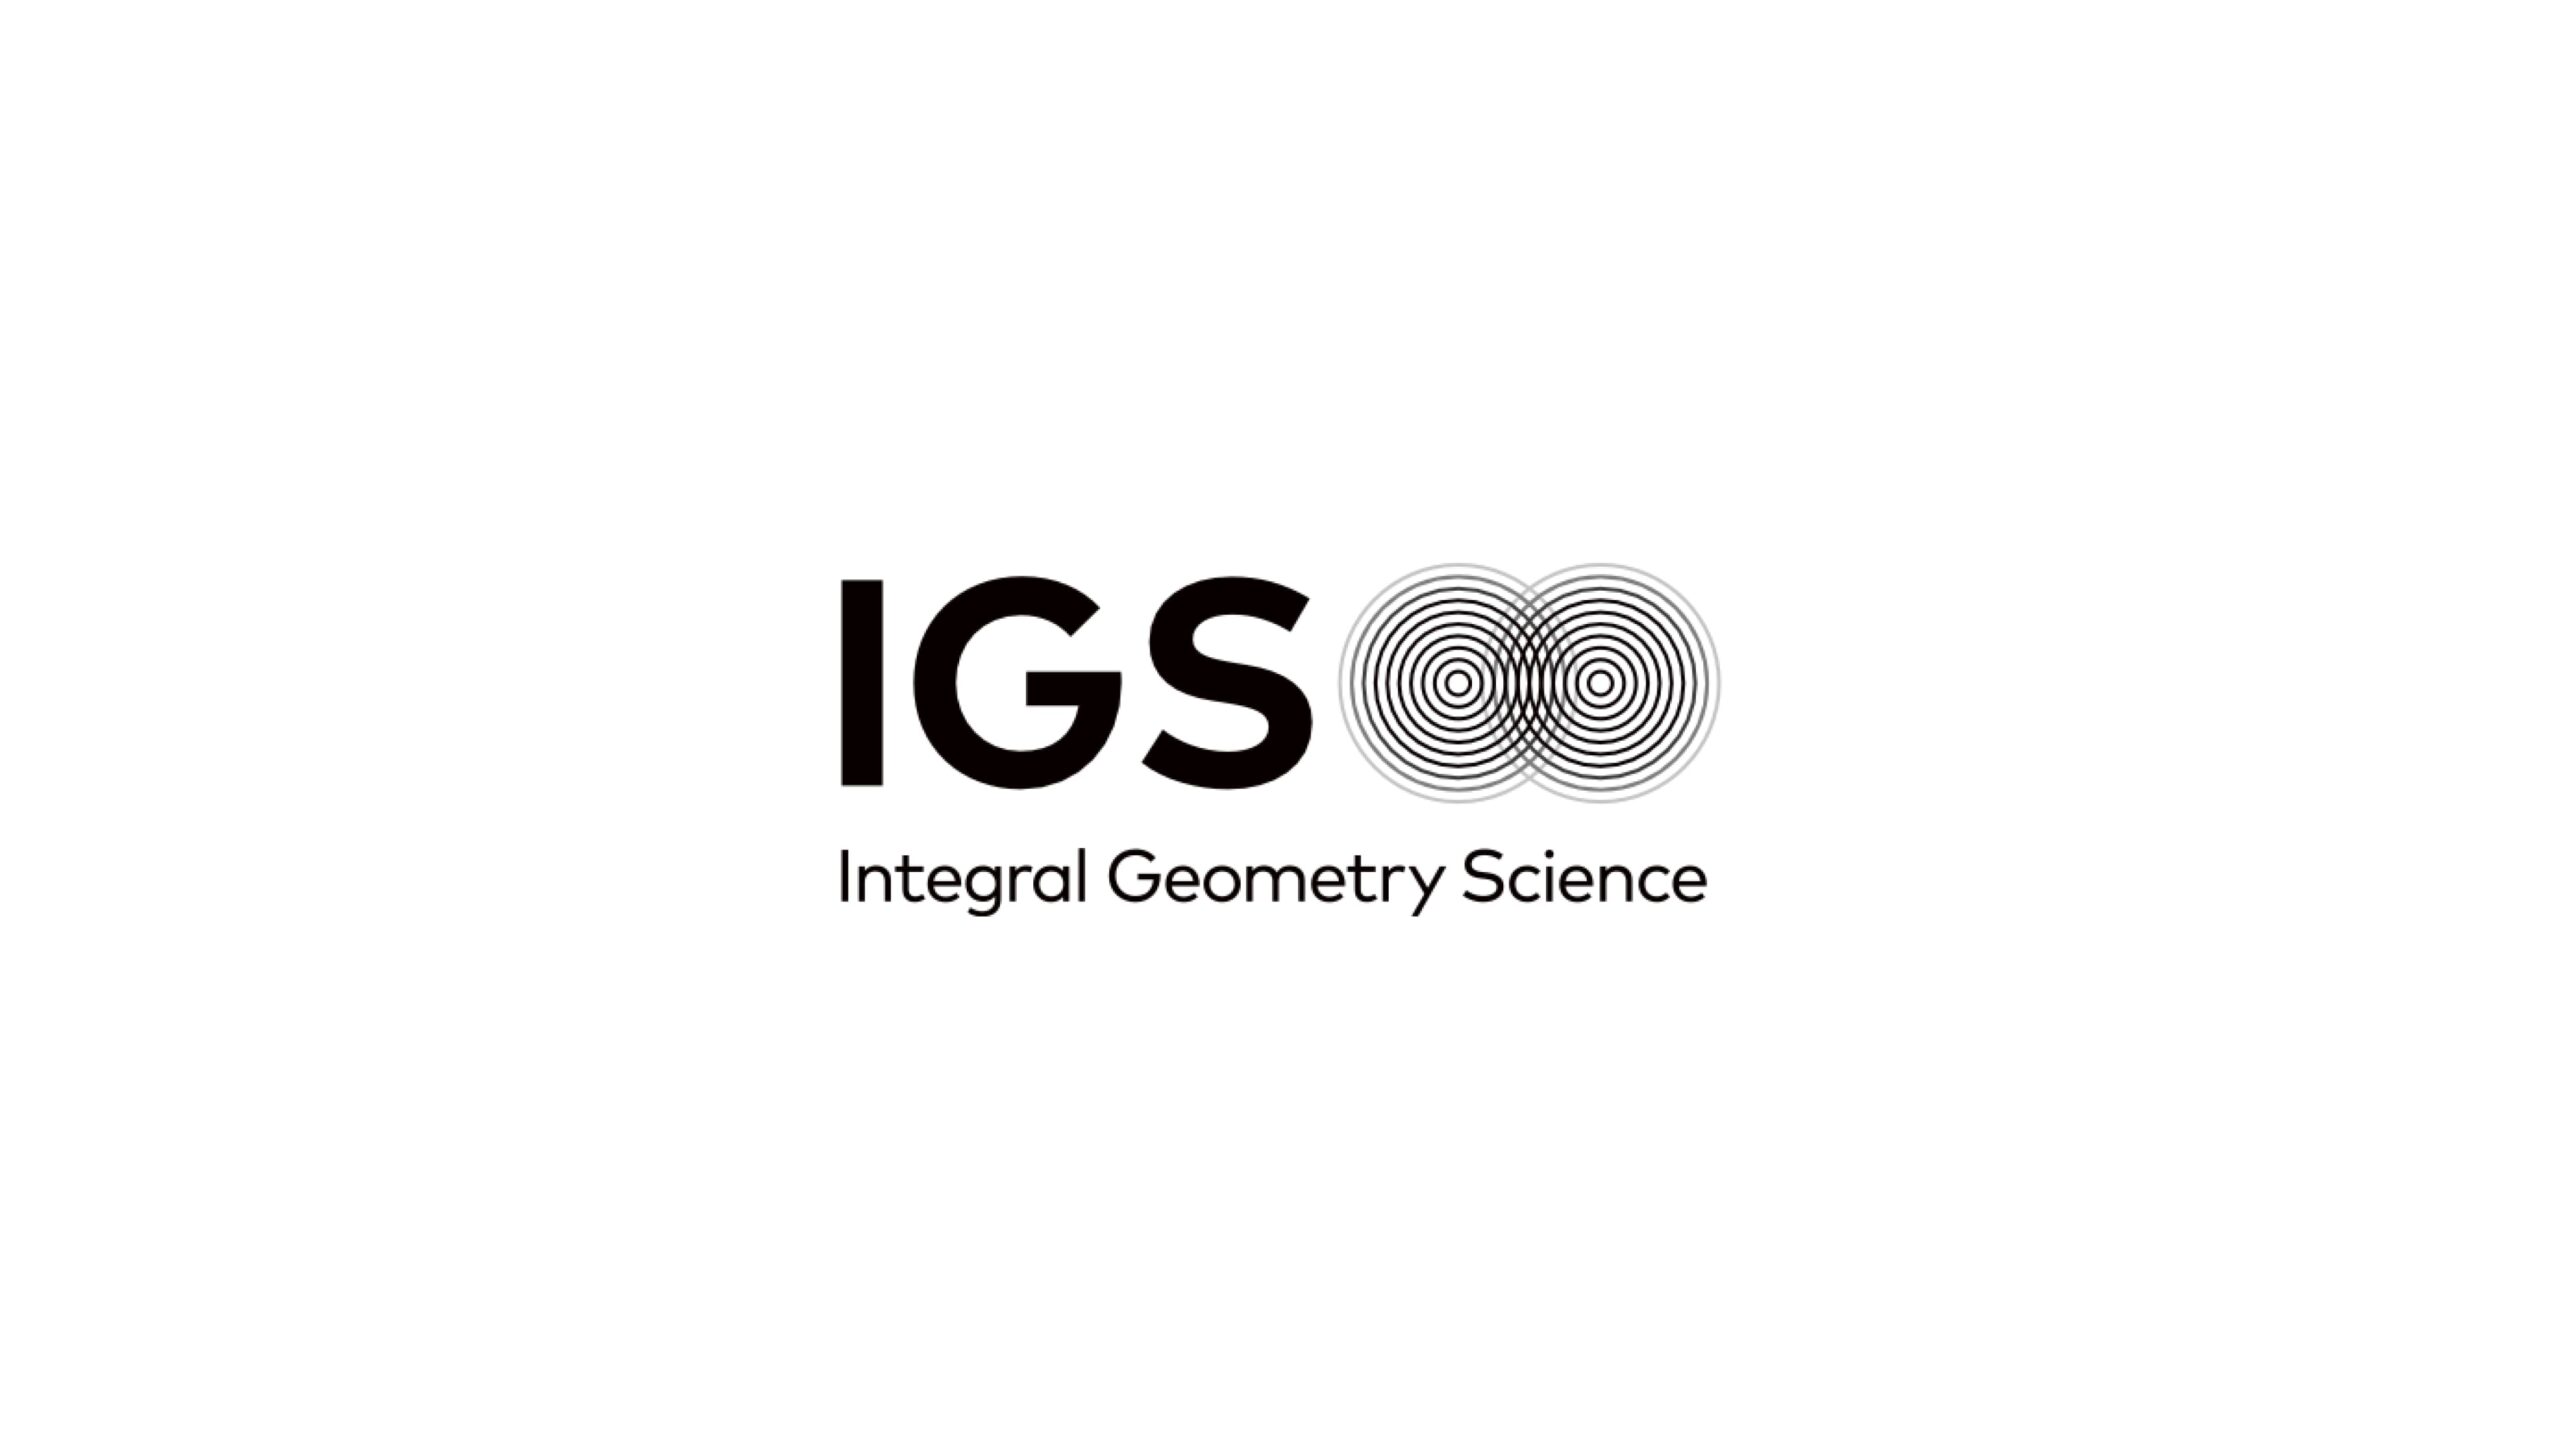 株式会社Integral Geometry Scienceは第三者割当増資及び助成金にて総額45億円の資金調達